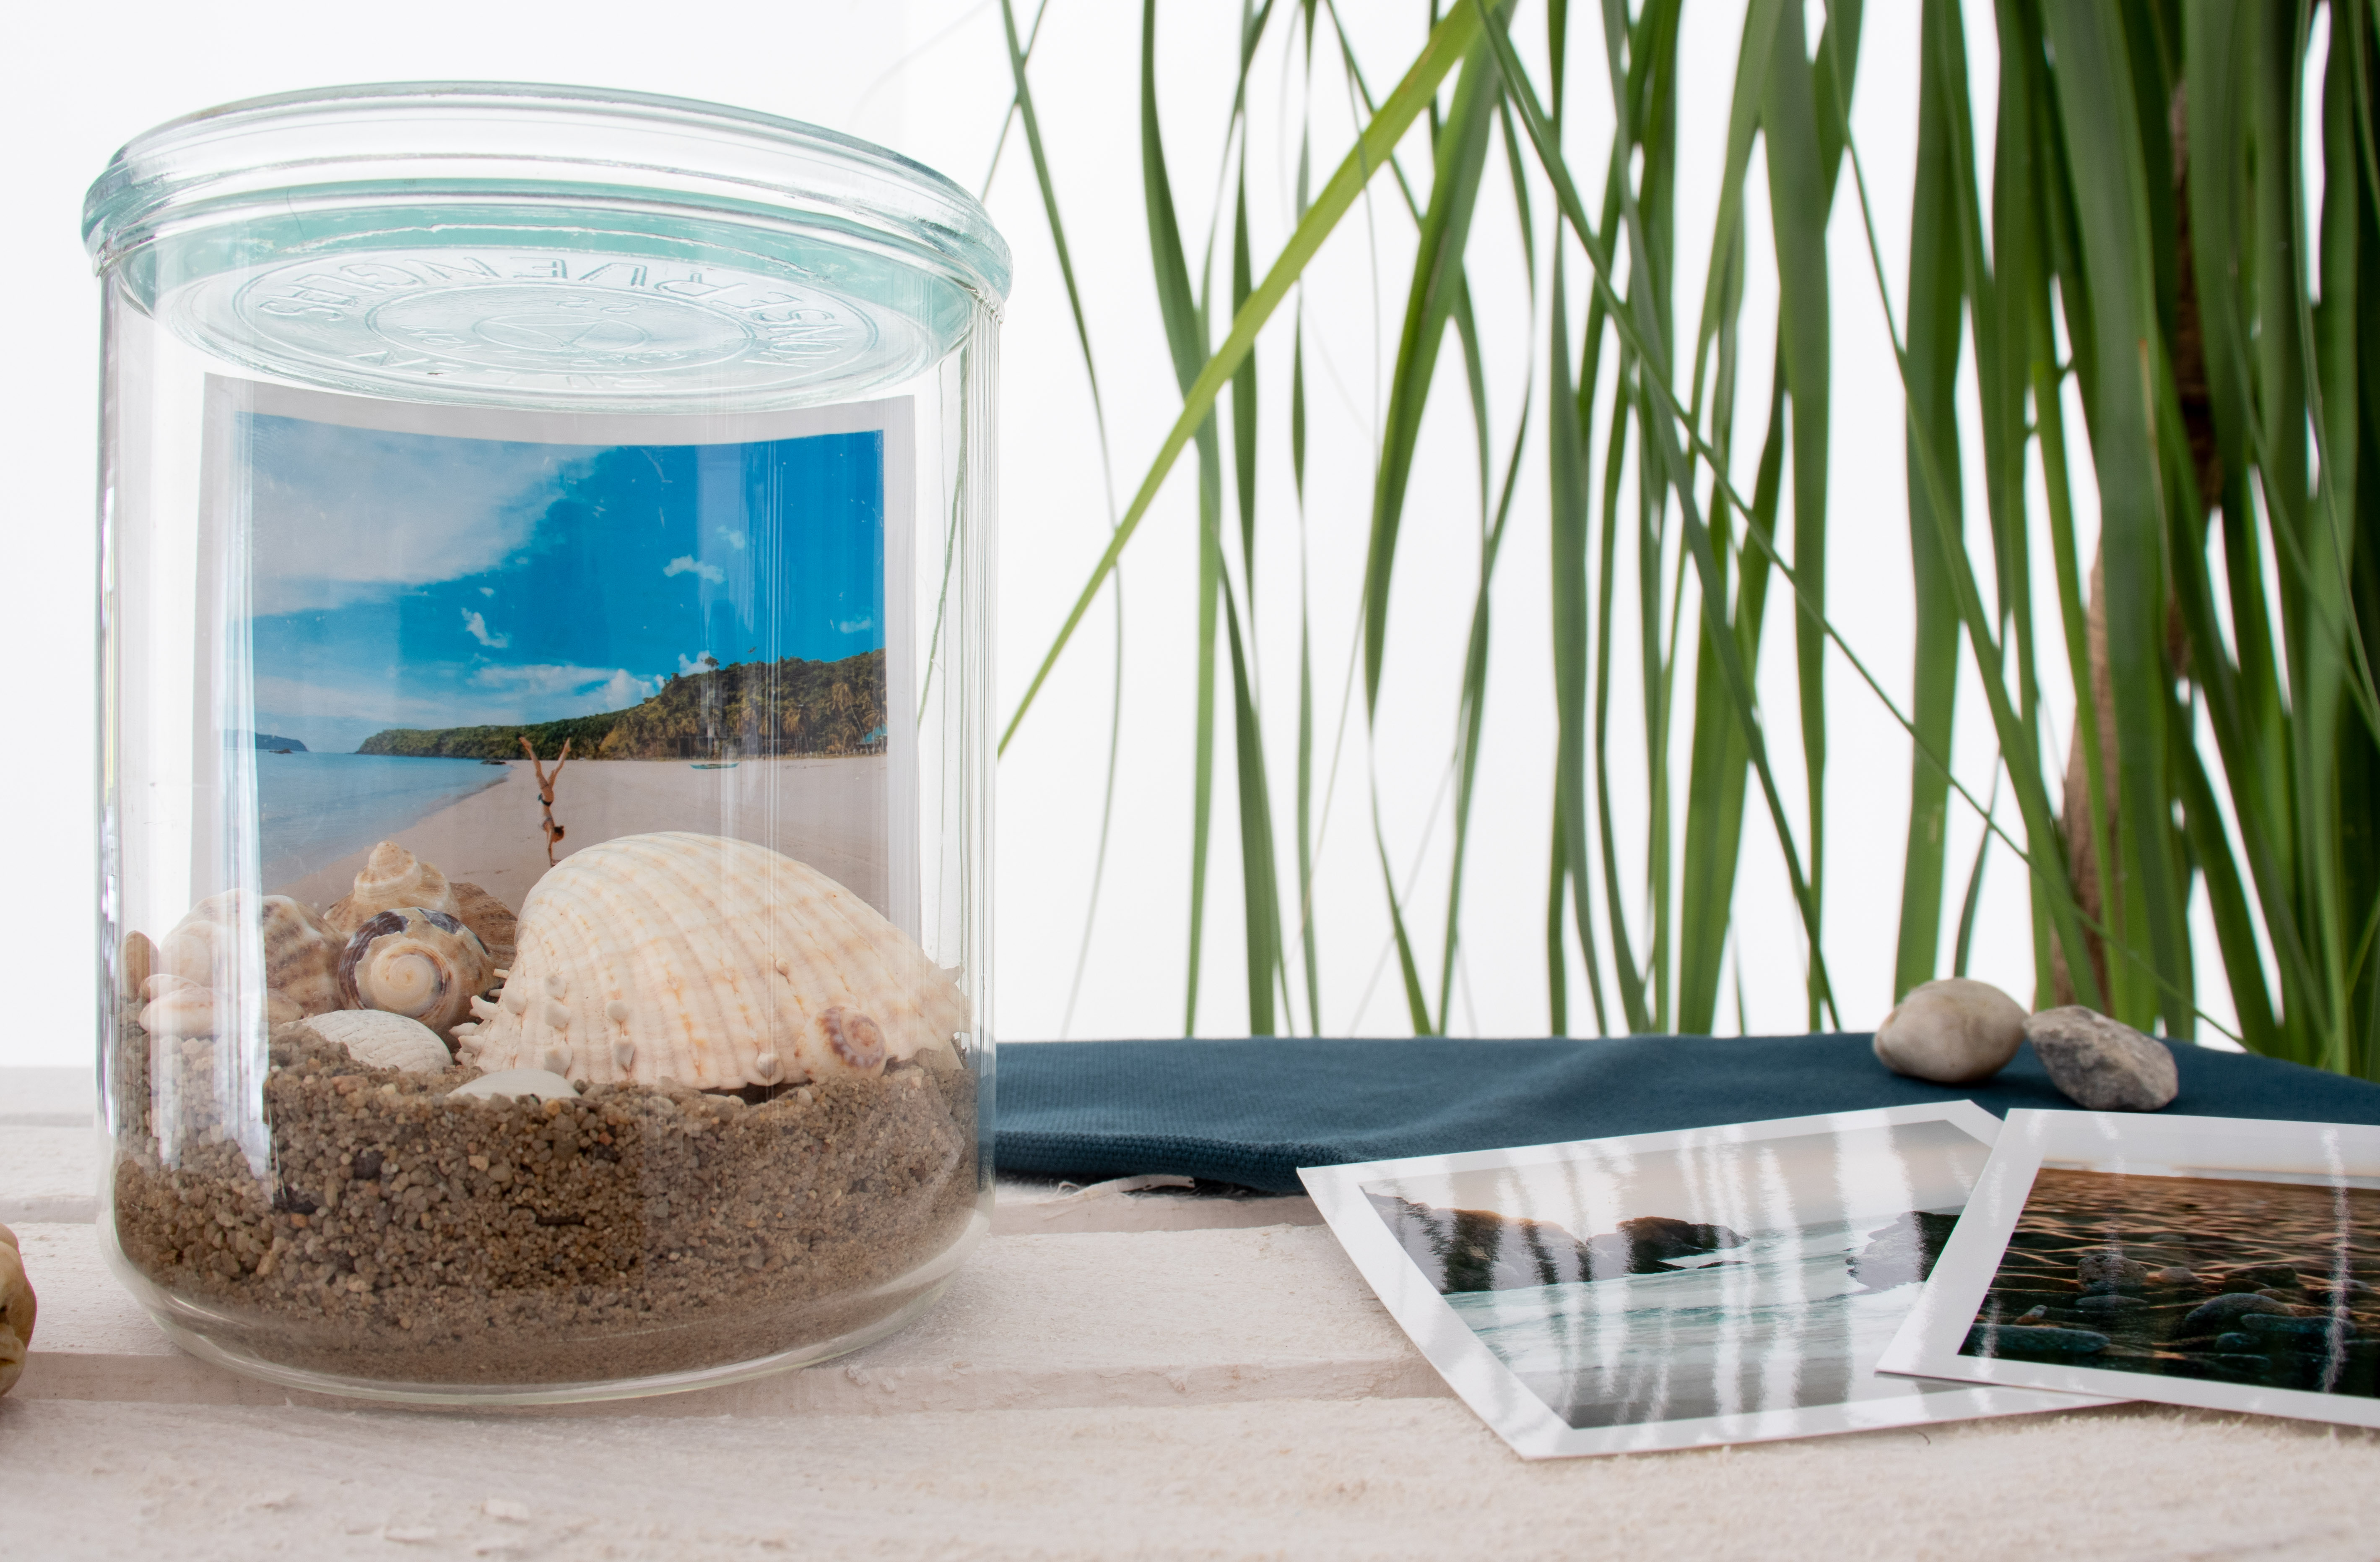 Erinnerungsgläser gestalten – DIY Idee mit Sand und Muscheln